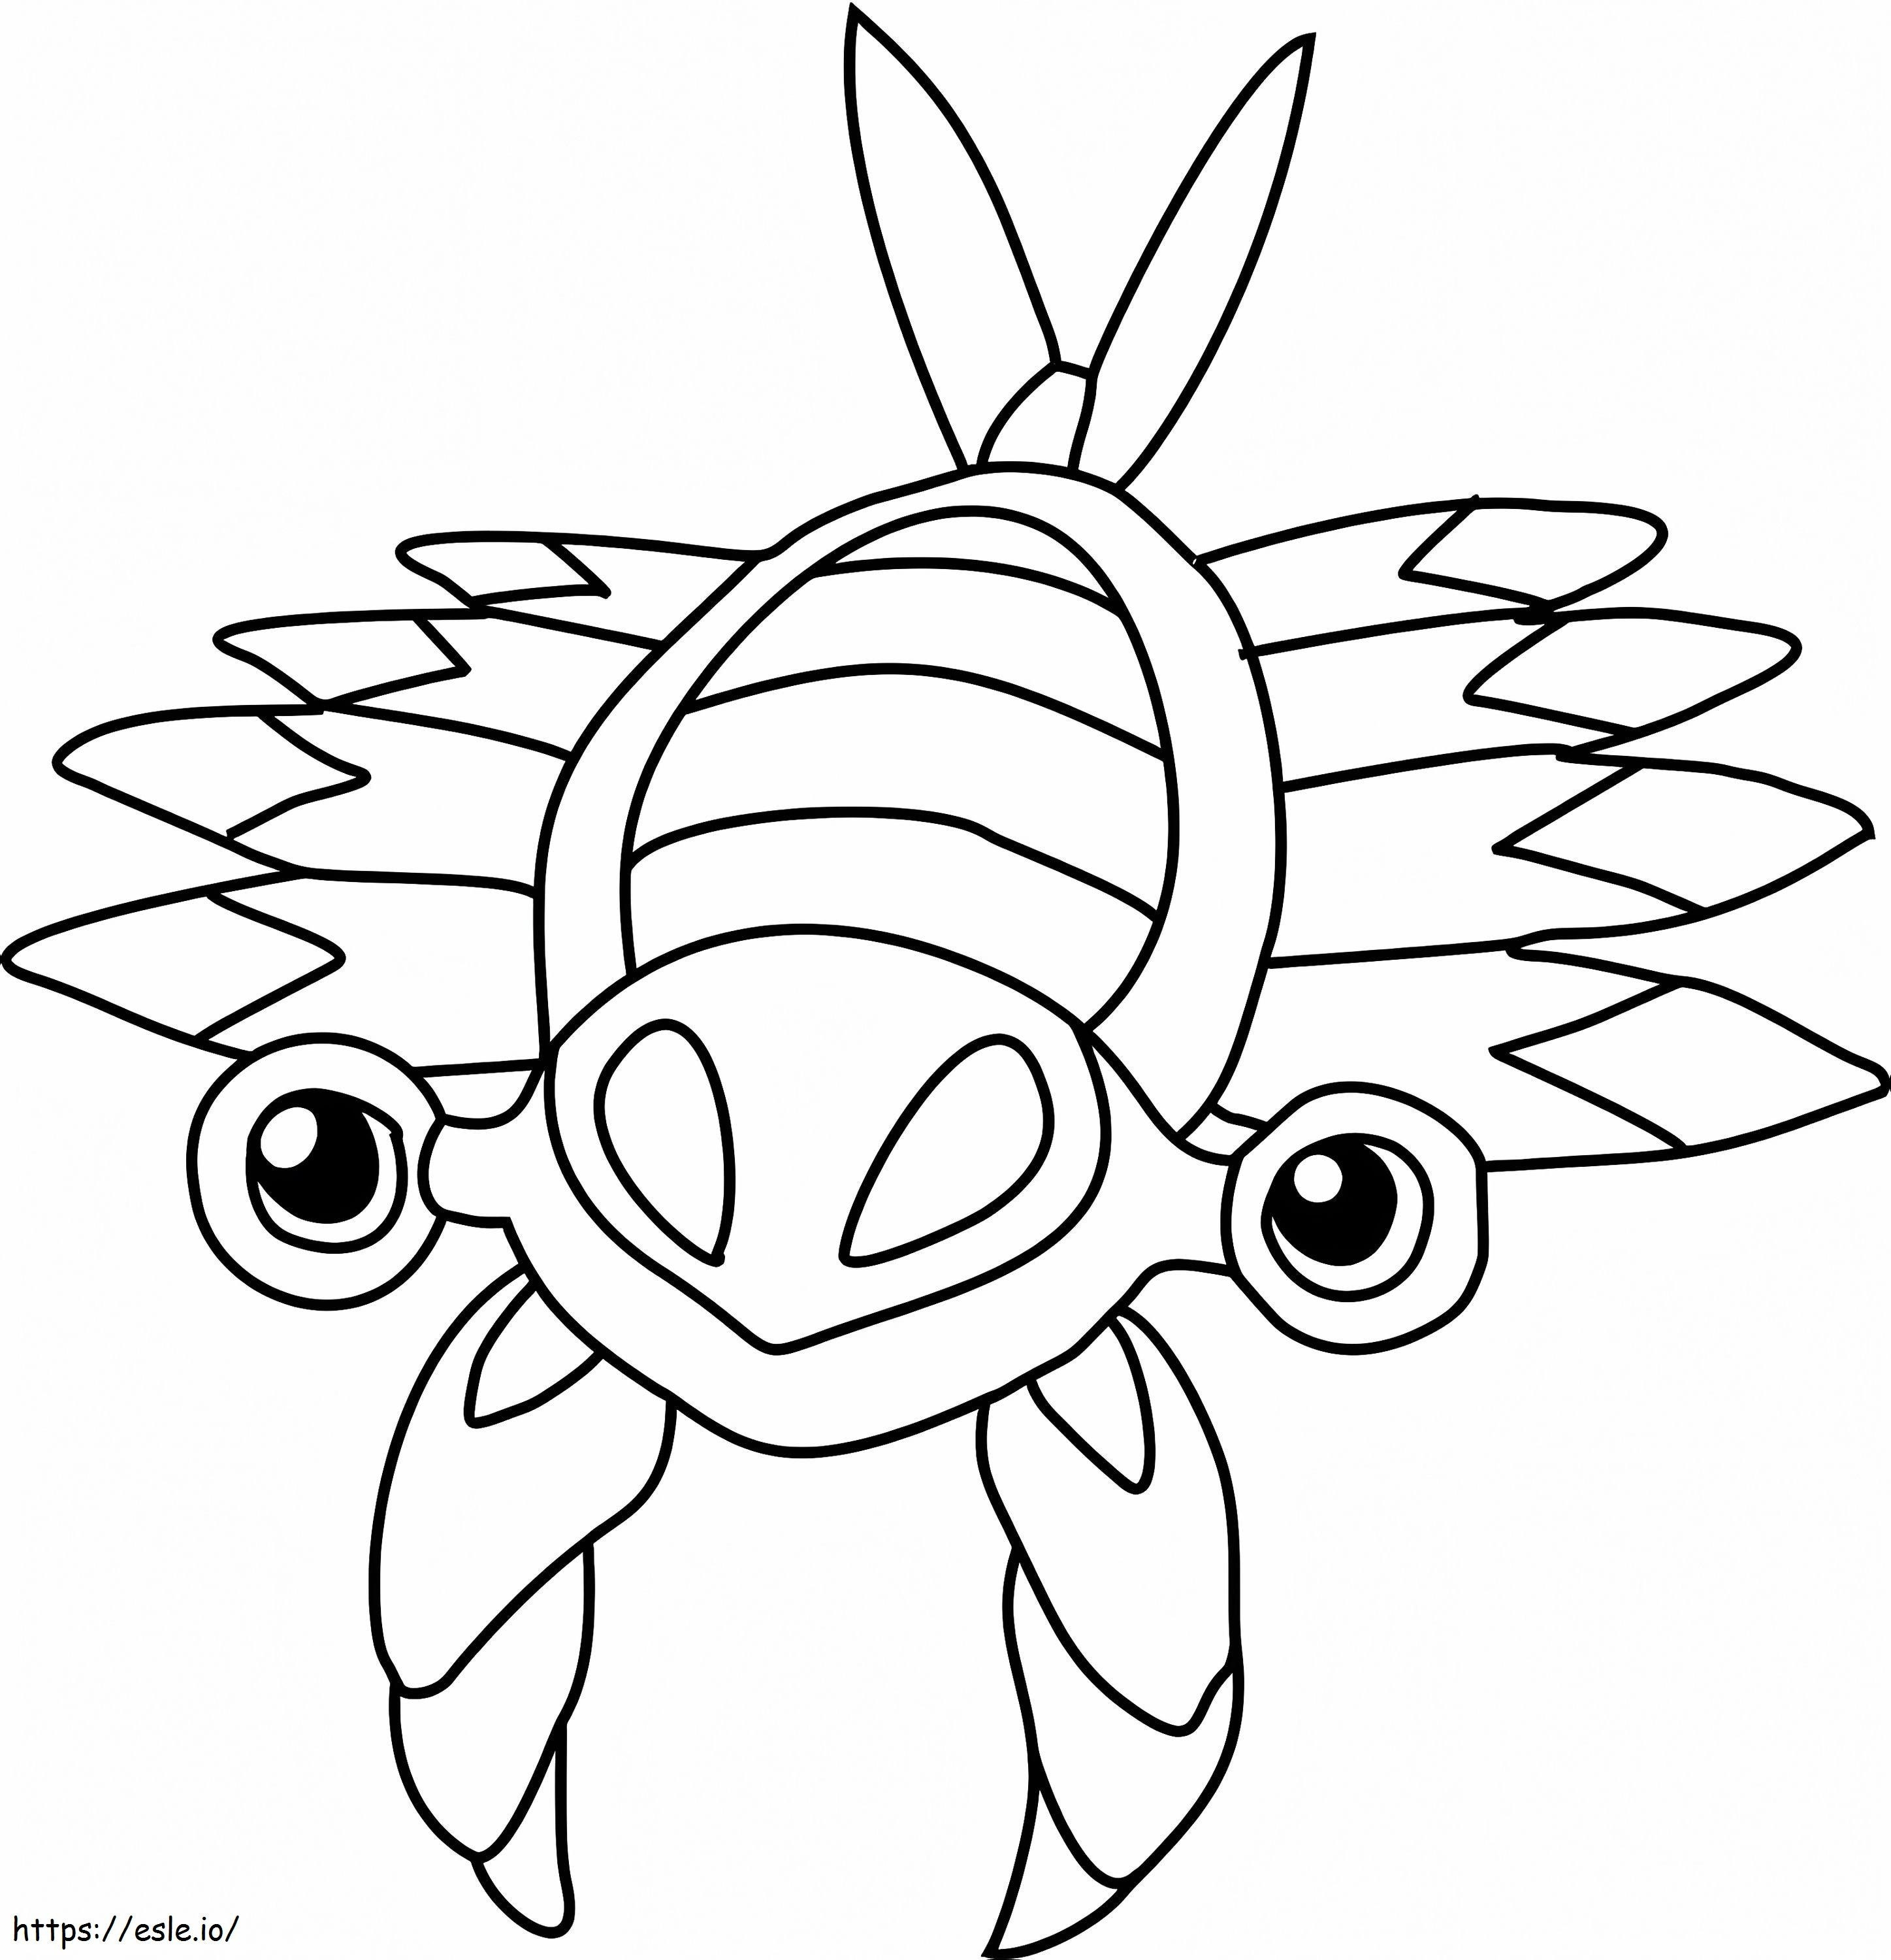 Coloriage Pokémon Anorith Gen 3 à imprimer dessin